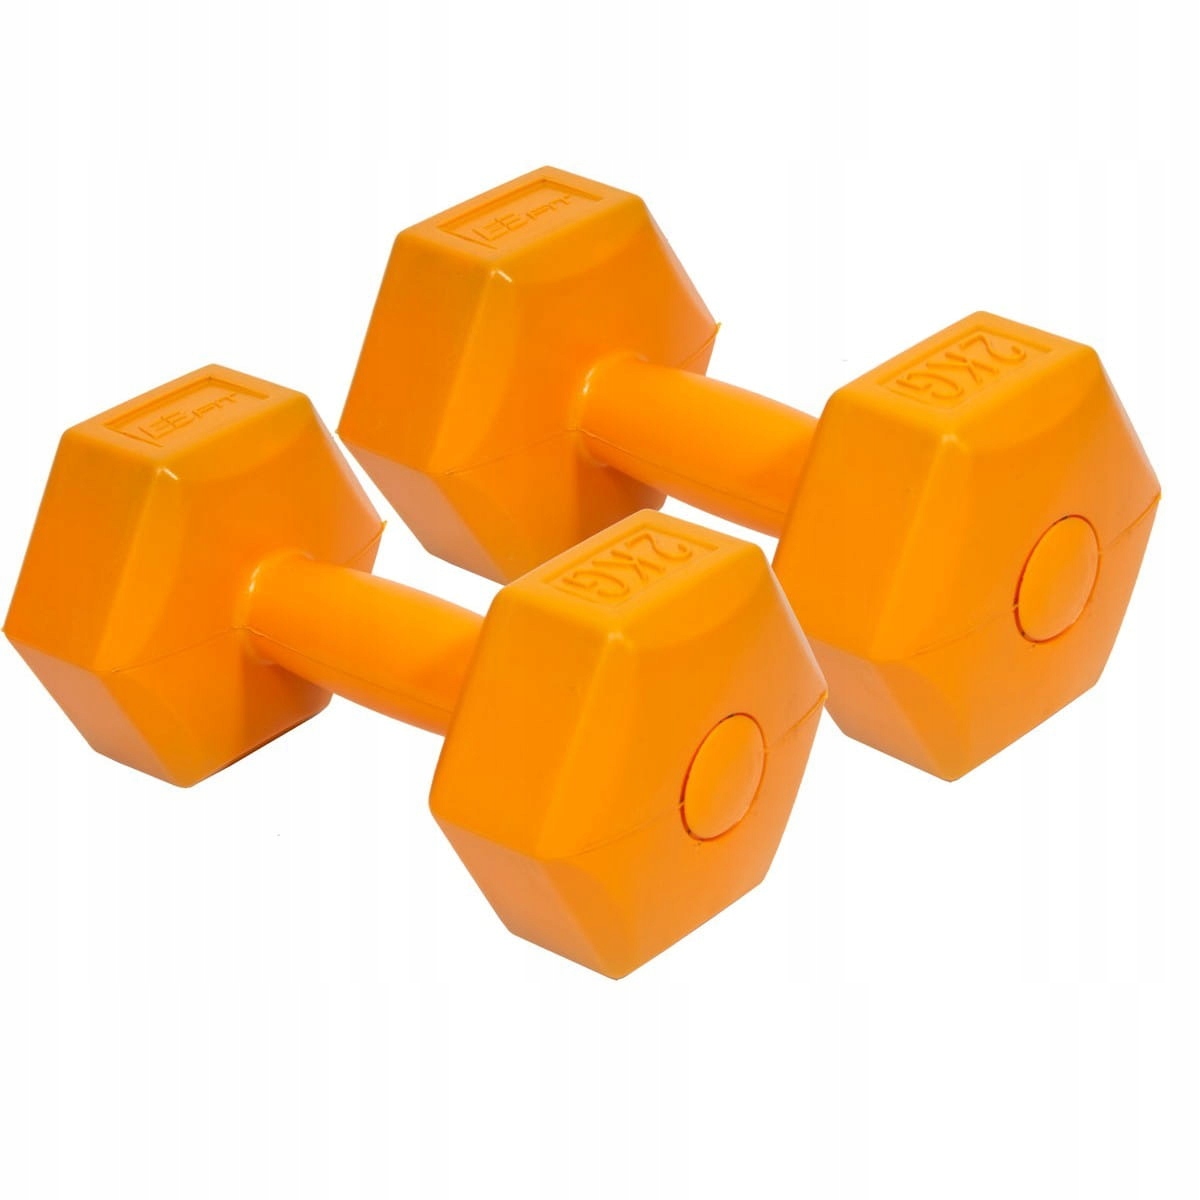 Гантели fit. Гантели оранжевые. Гантели оранжевые 2 кг. Набор составных гантель. Fit гантели для фитнеса.